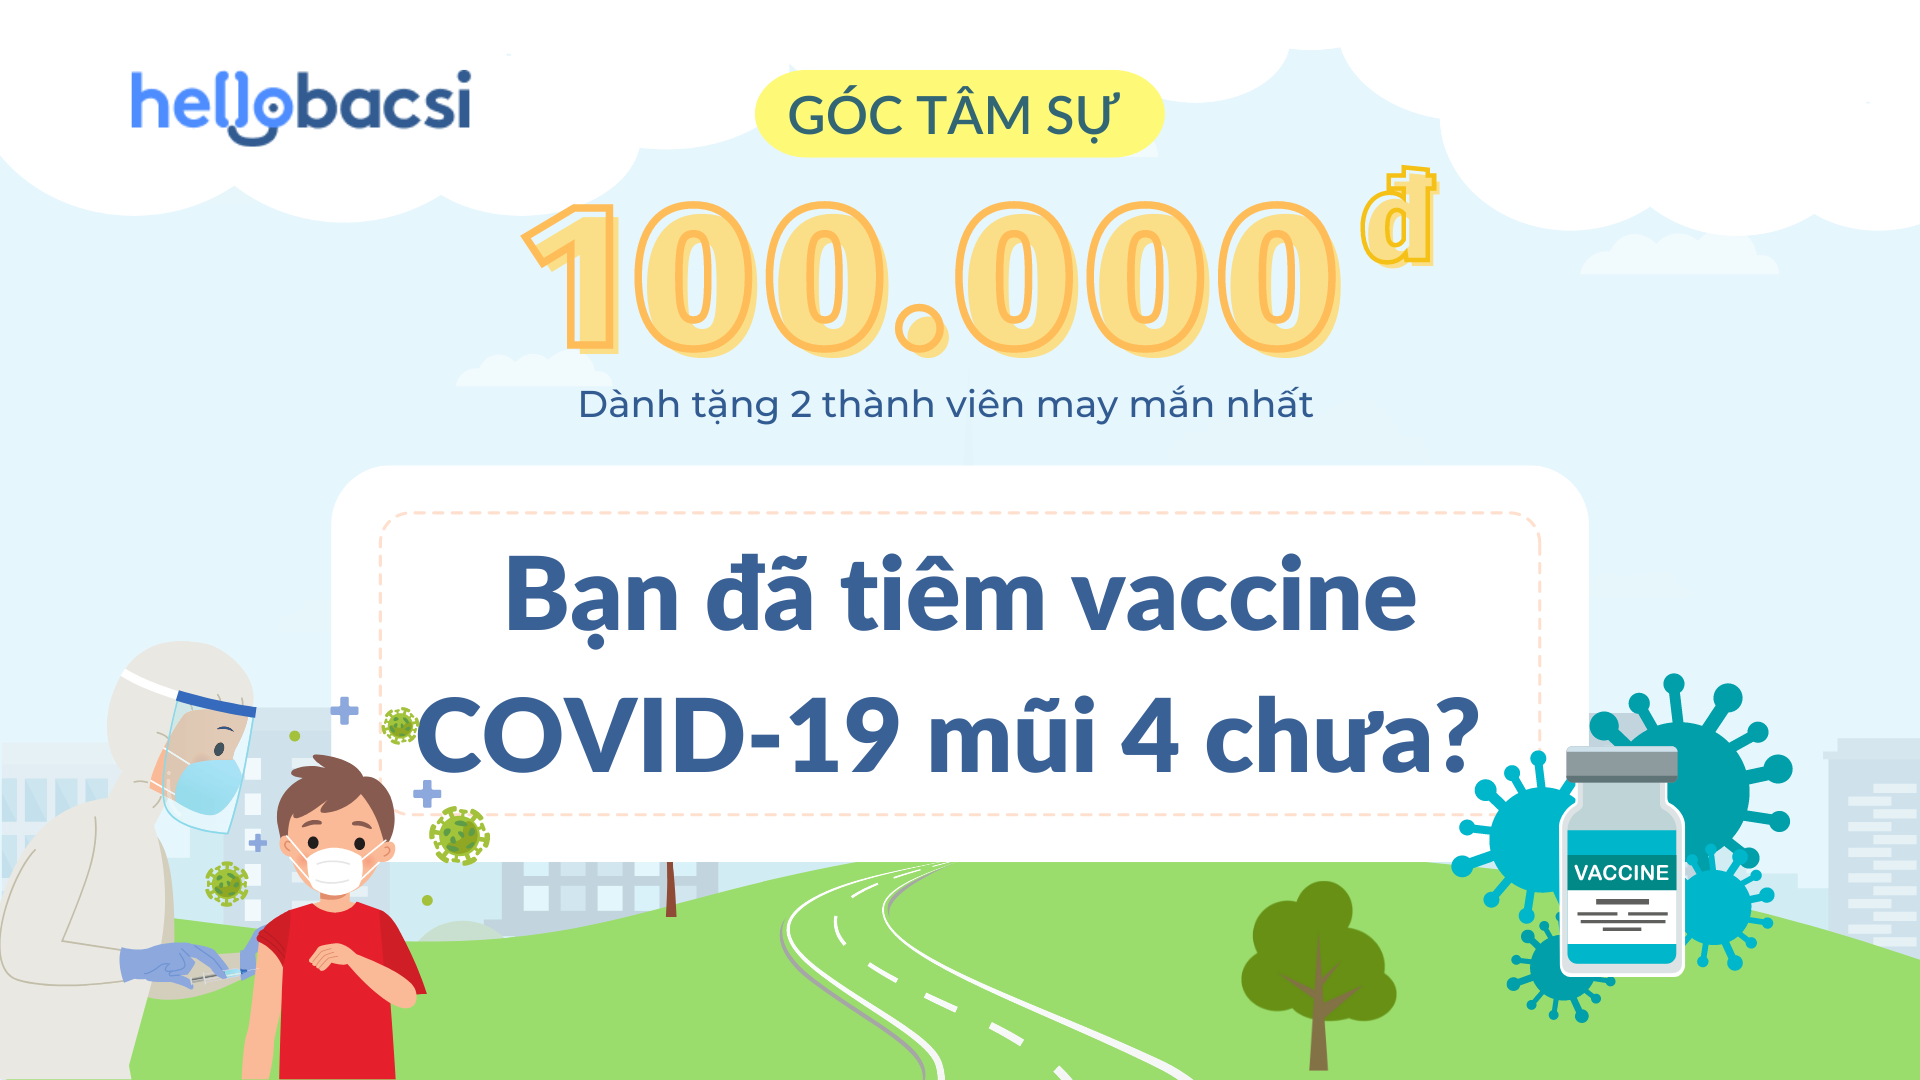 #Góc tâm sự: Bạn đã tiêm vaccine COVID-19 mũi 4 chưa?